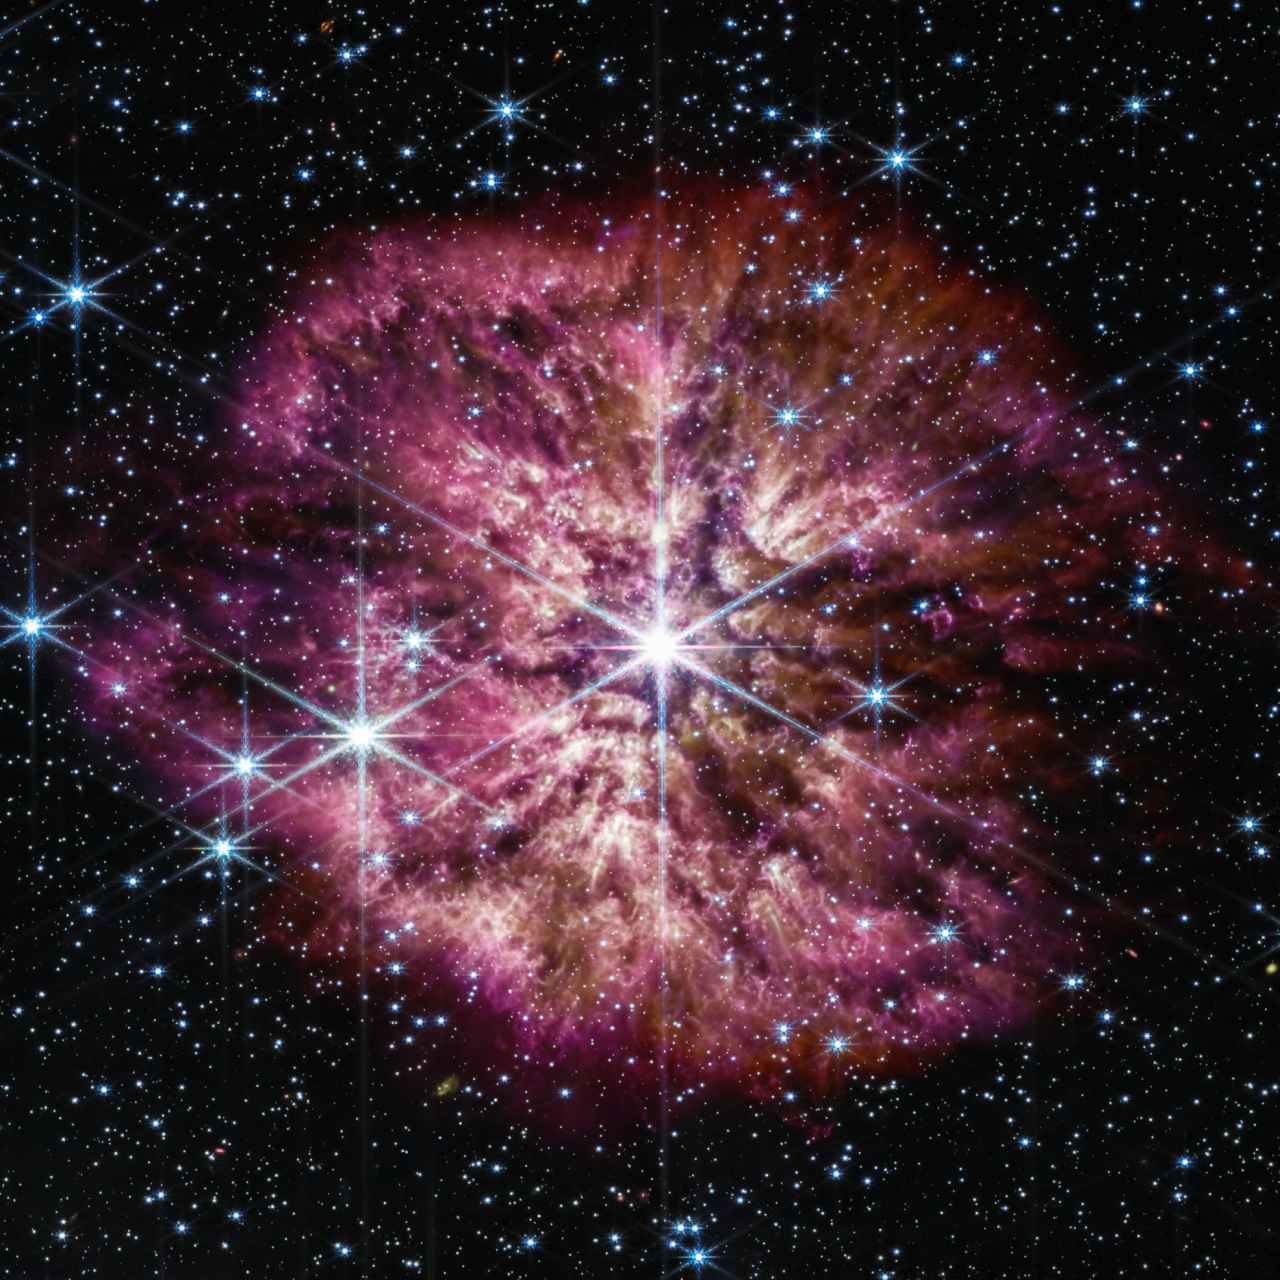 Imagen sin recortar del webb, con la estrella Wolf-Rayet 124 en el centro.